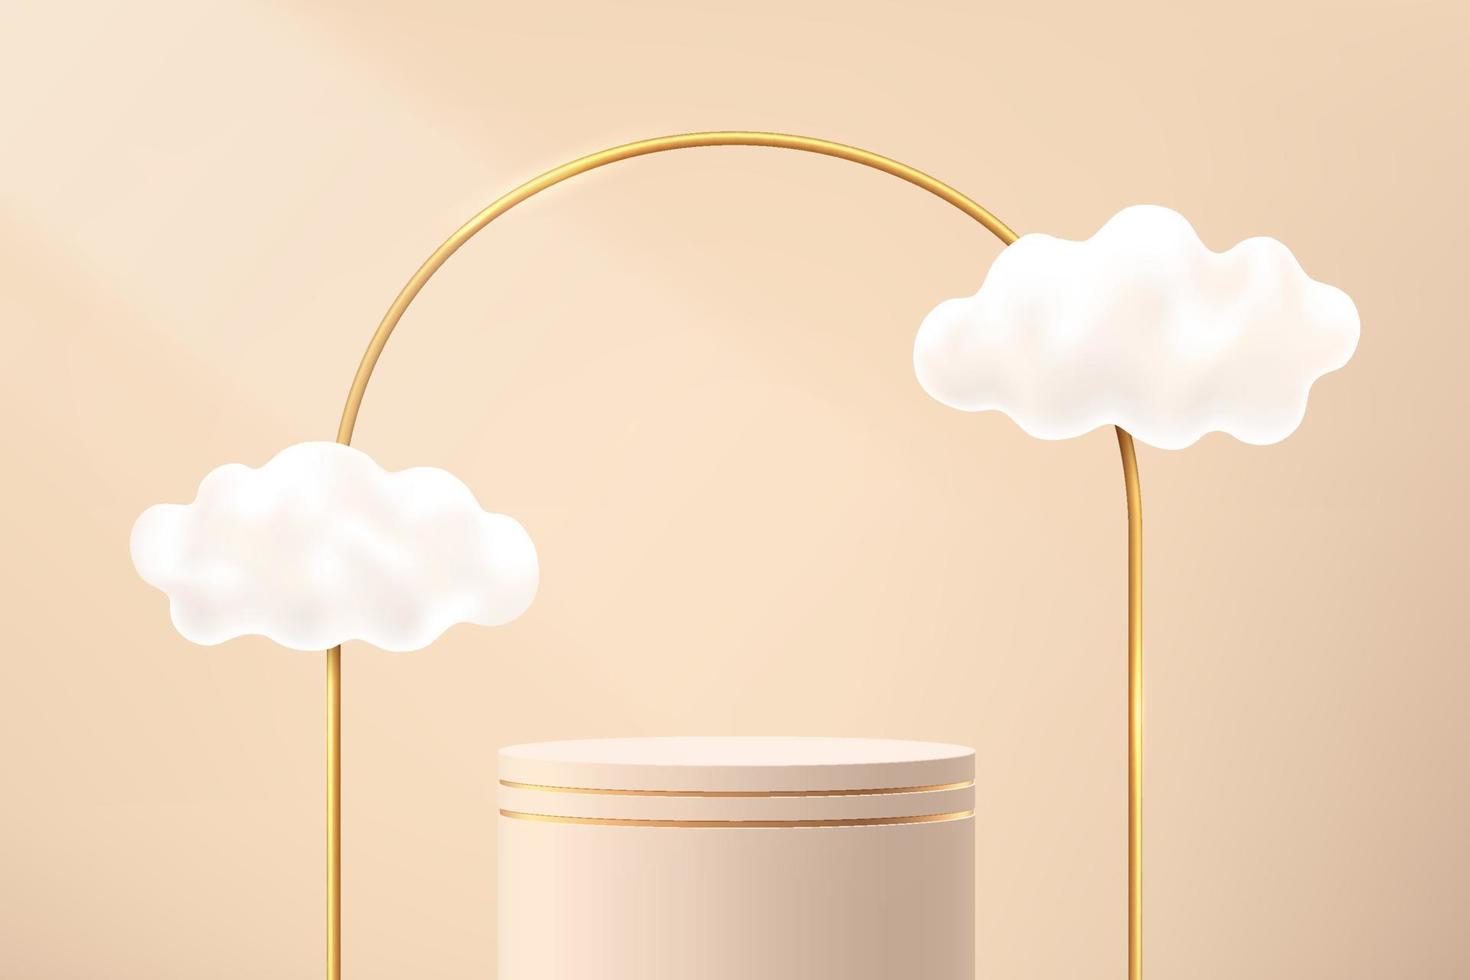 piedistallo cilindro 3d beige astratto o podio con archi dorati e nuvole volanti. scena minimale di lusso marrone chiaro per la presentazione di prodotti cosmetici. piattaforma di rendering geometrico vettoriale